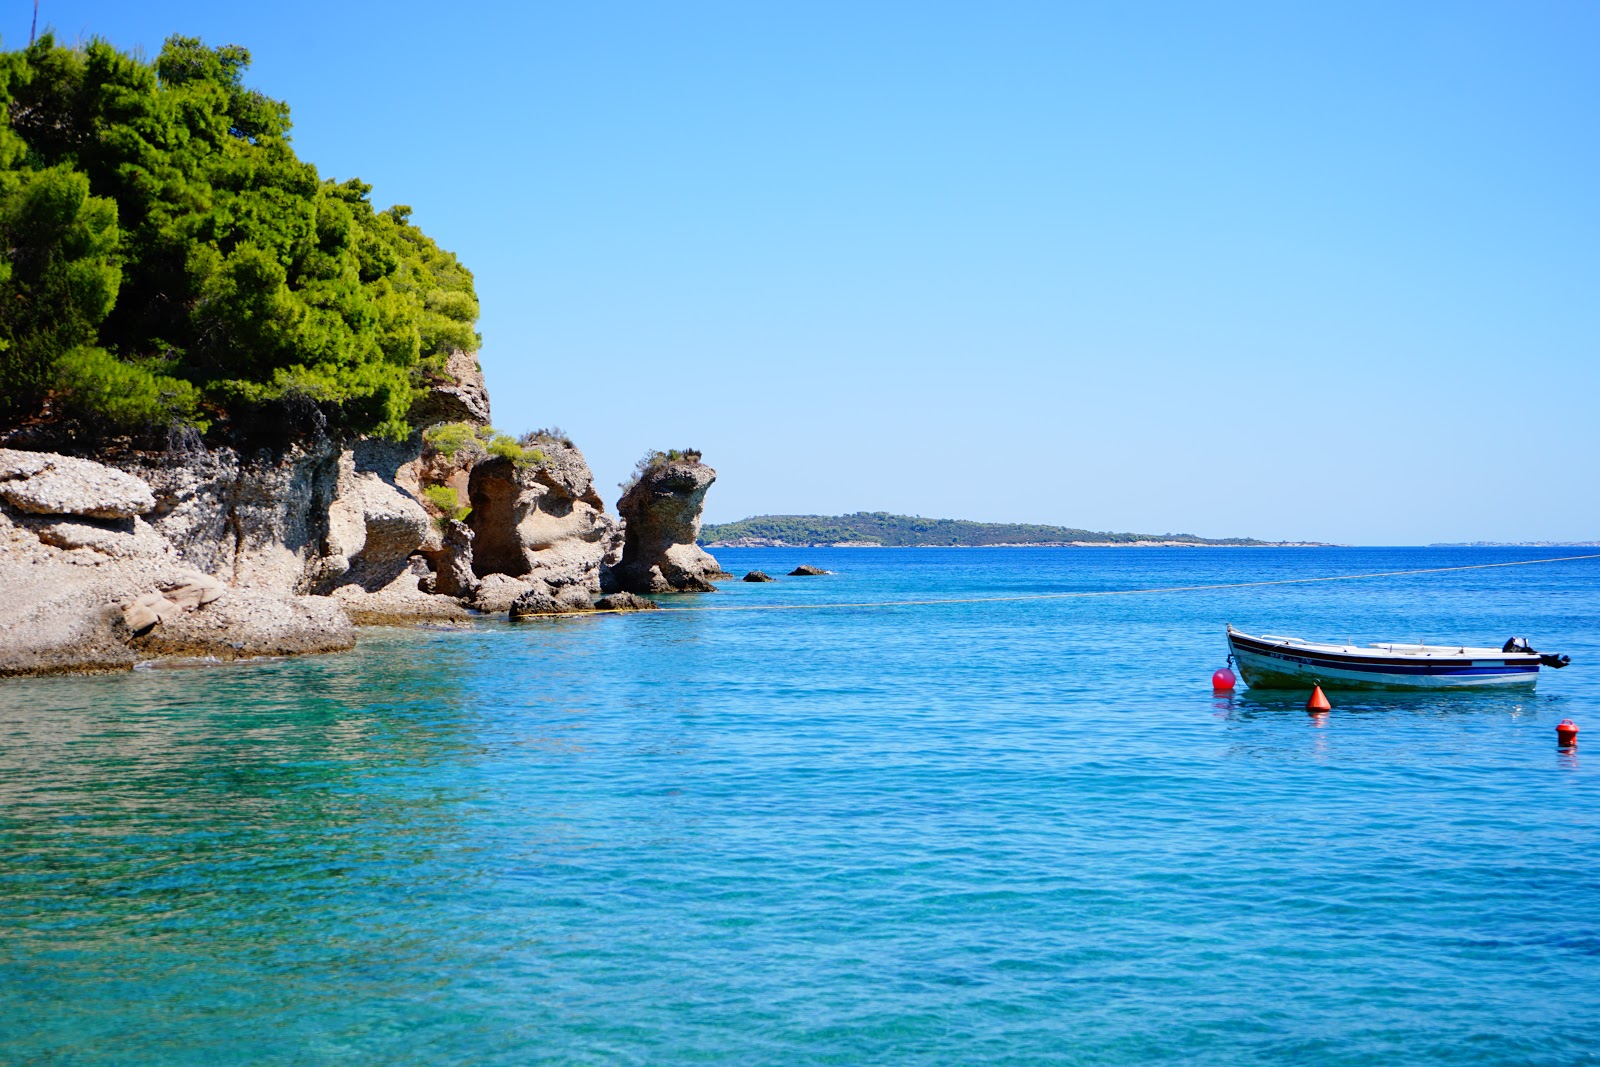 Photo of Spiaggia Kranidi located in natural area